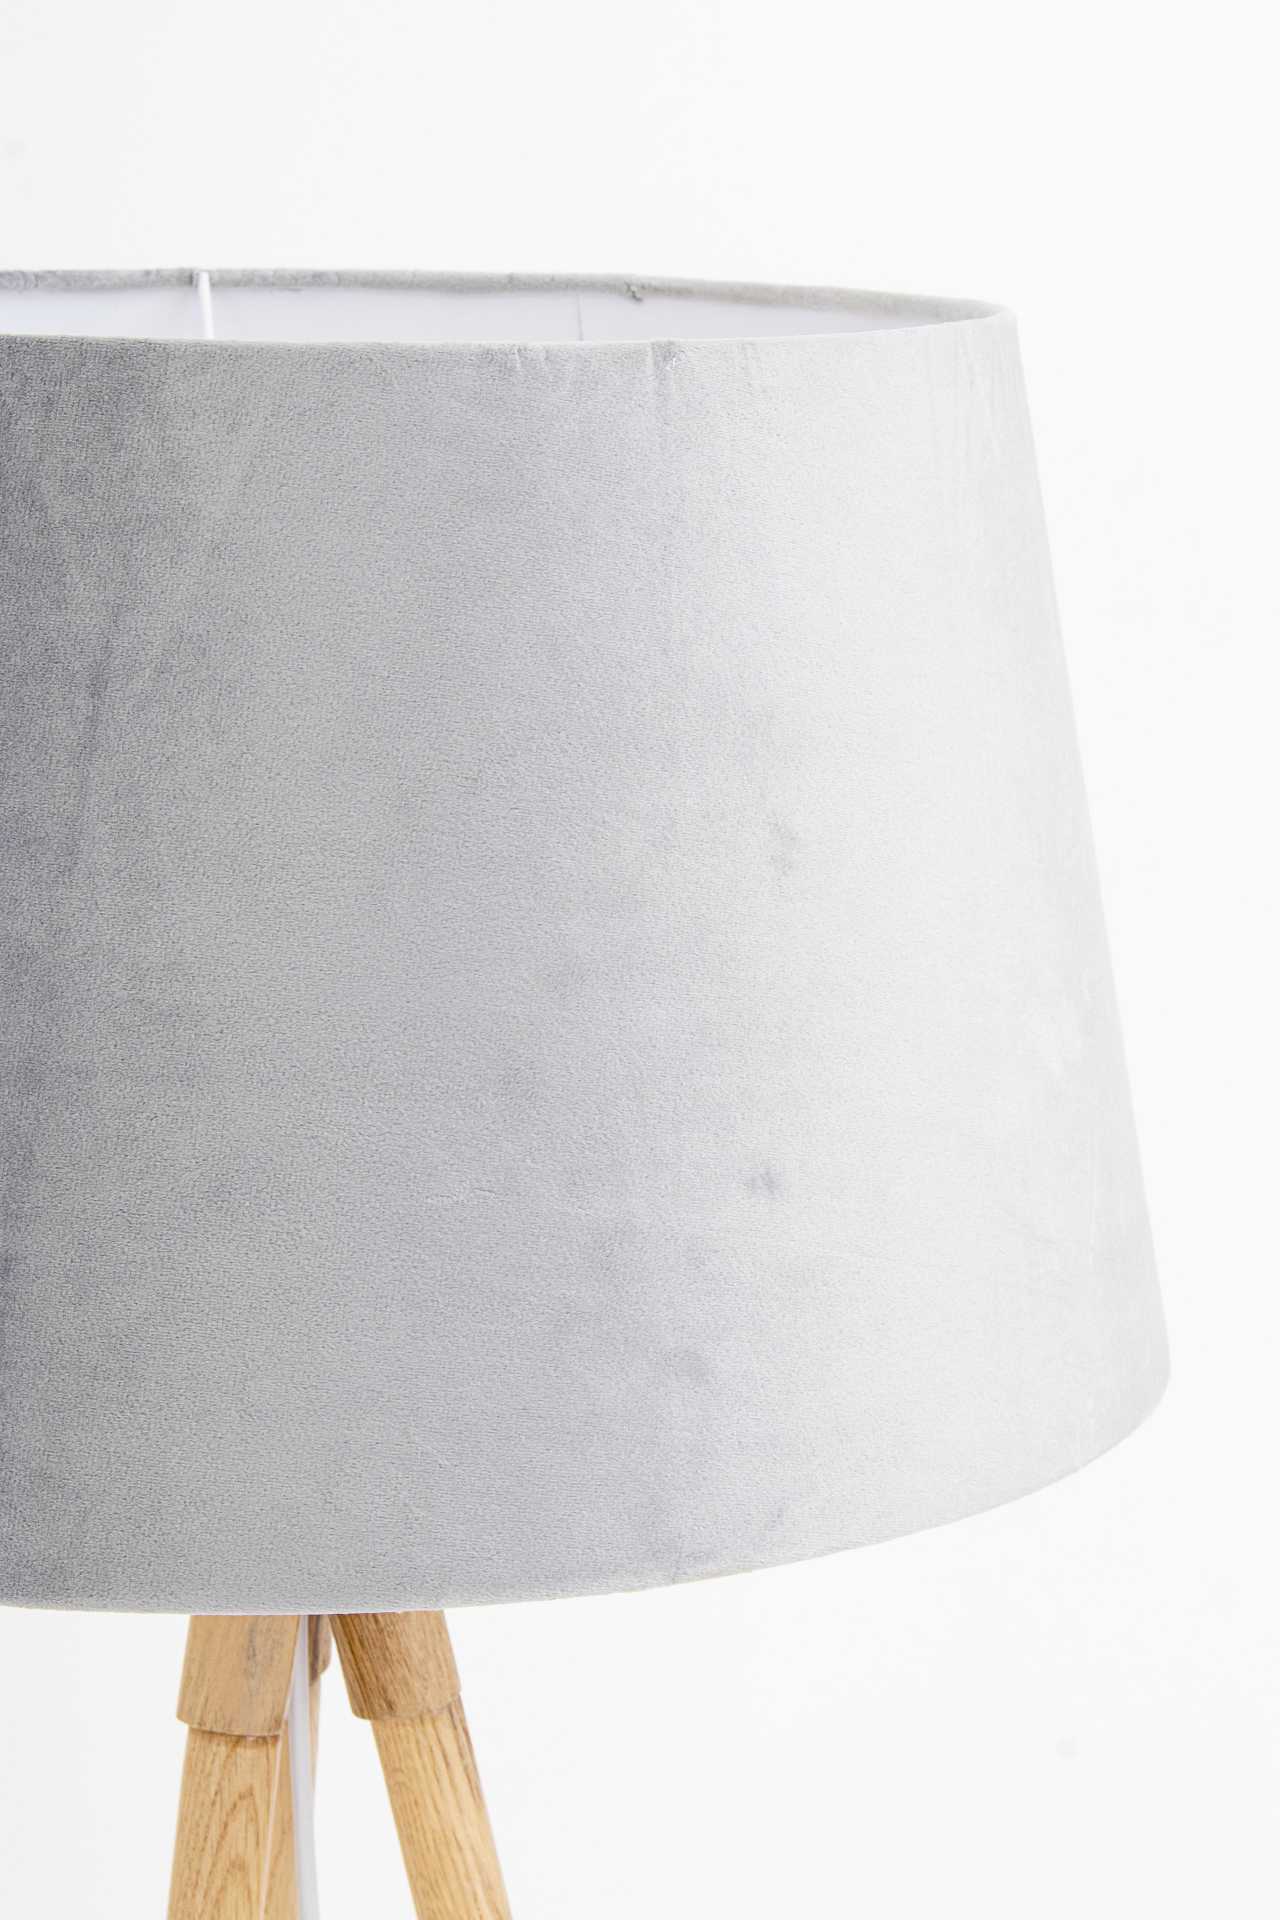 Die Stehleuchte Wallas überzeugt mit ihrem klassischen Design. Gefertigt wurde sie aus Tannenholz, welches einen natürlichen Farbton besitzt. Der Lampenschirm ist aus Samt und hat eine graue Farbe. Die Lampe besitzt eine Höhe von 152 cm.